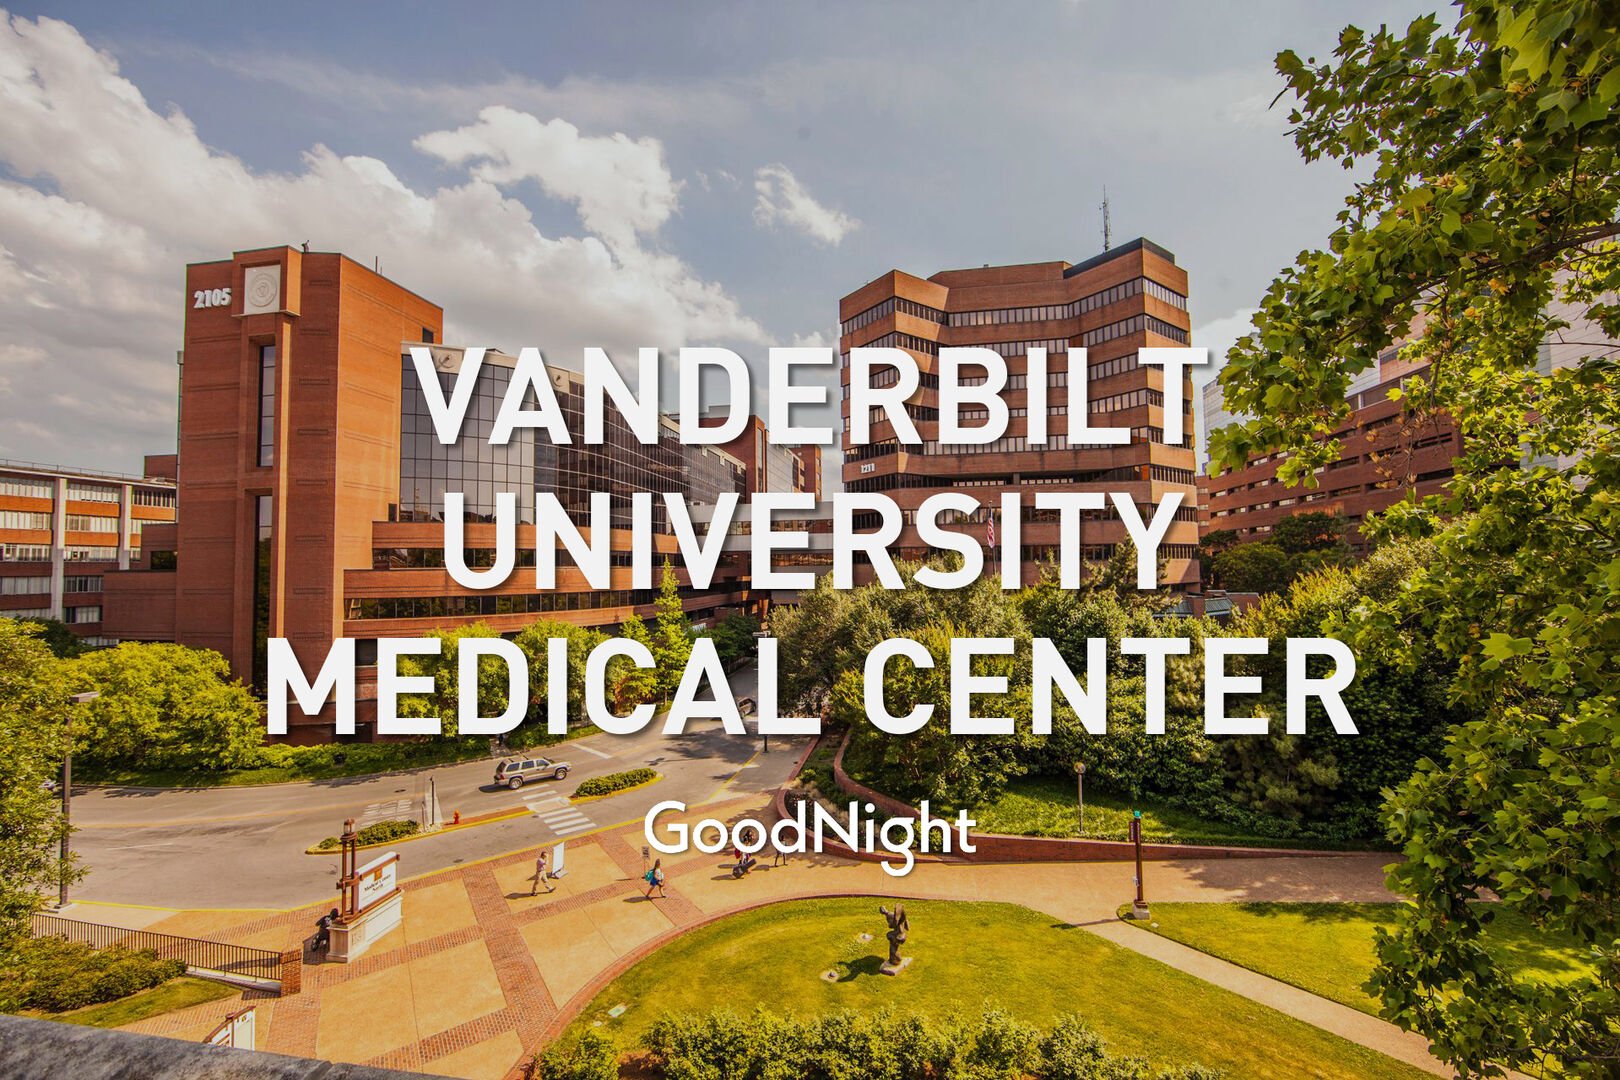 5 mins: Vanderbilt Medical Center